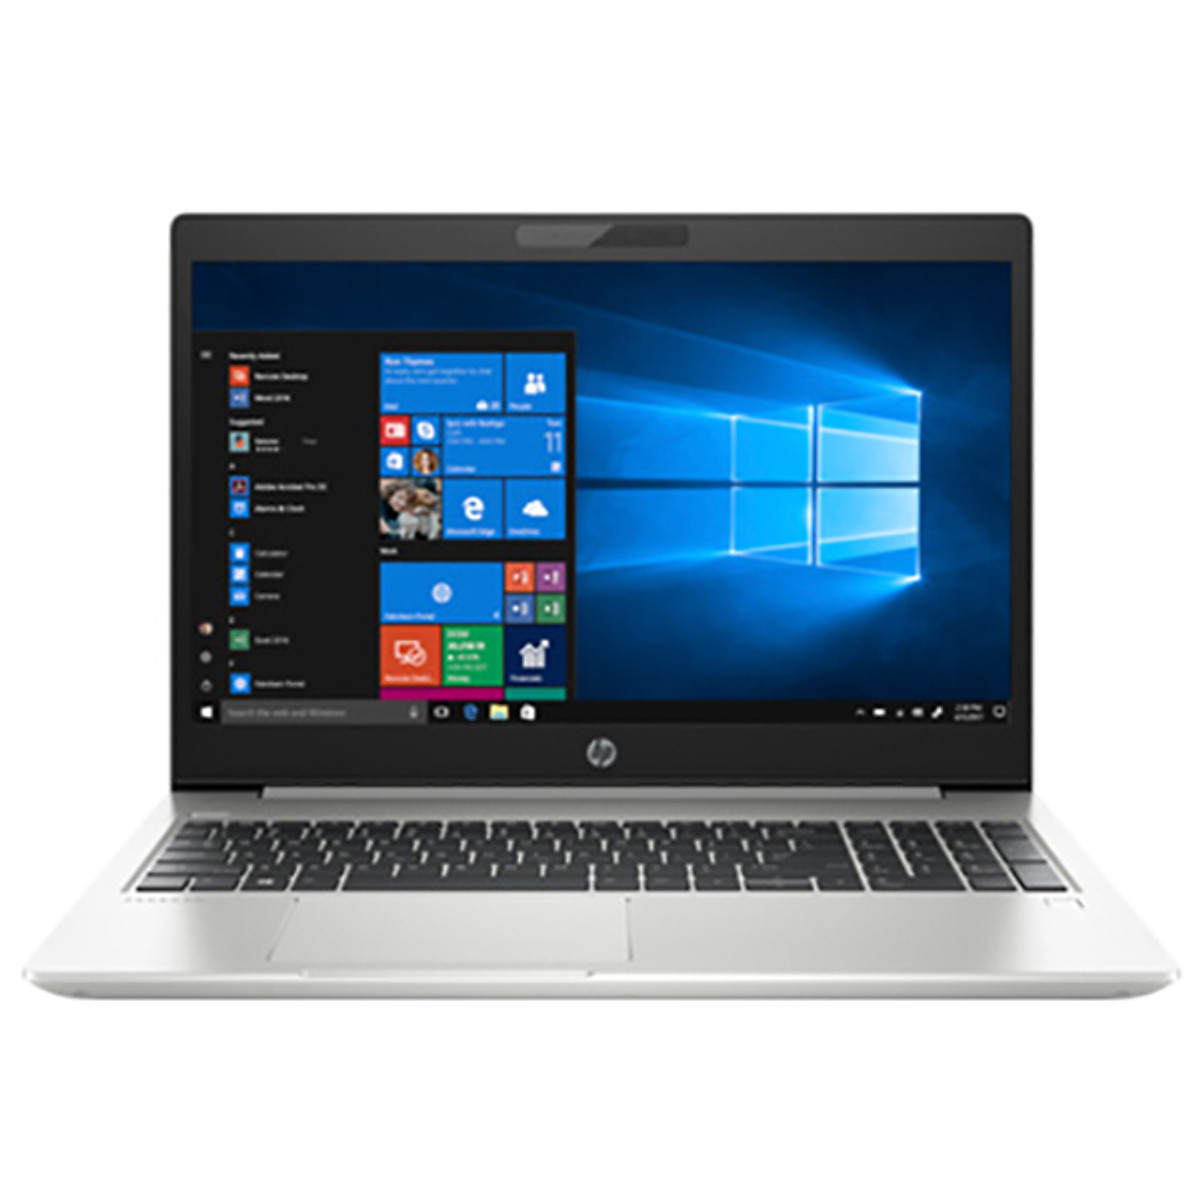 Laptop HP ProBook 450 G6 6FH07PA Core i7-8565U/ MX130 2GB/ Dos (15.6 FHD) – Hàng Chính Hãng